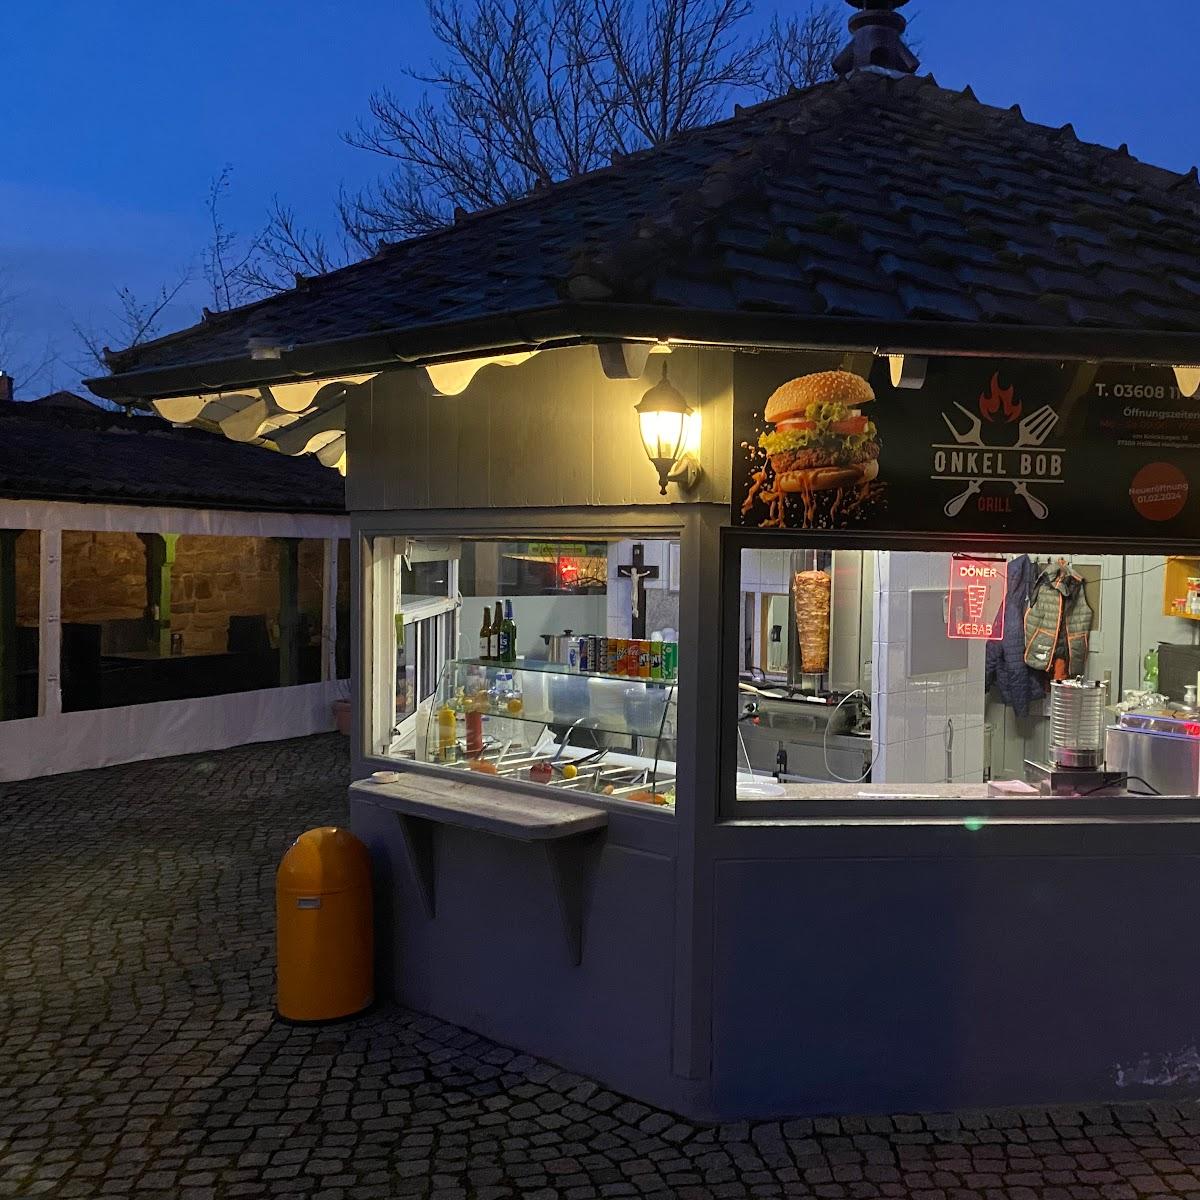 Restaurant "Stadtmauer Grill" in Heilbad Heiligenstadt